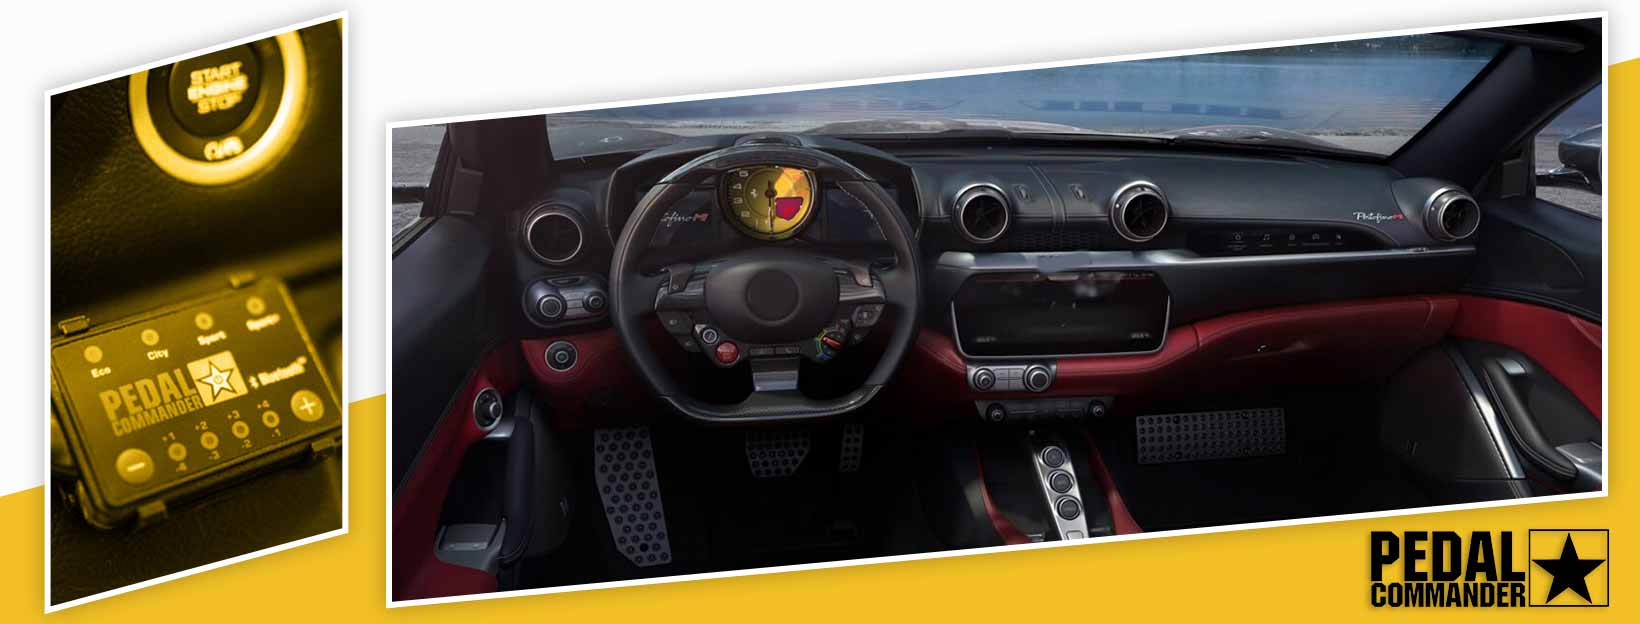 Pedal Commander for Ferrari Portofino - interior